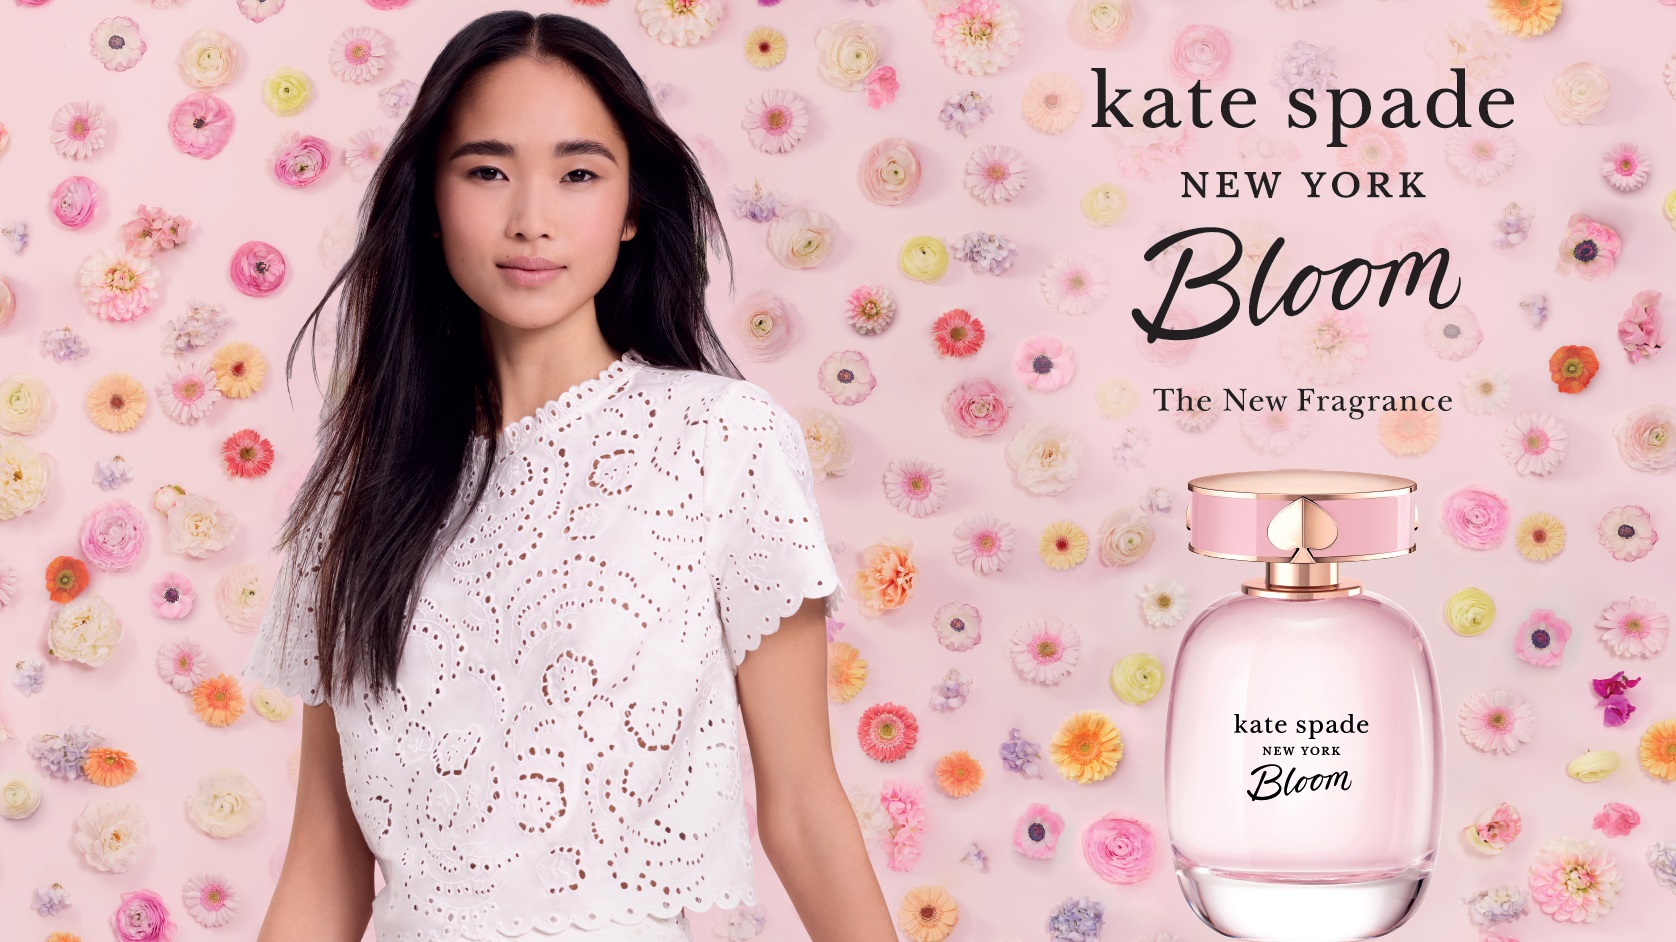 4月17日（水）、ケイト・スペード ニューヨークからカラフルな花束のように魅惑的な新フレグランス「ブルーム オードトワレ」が発売